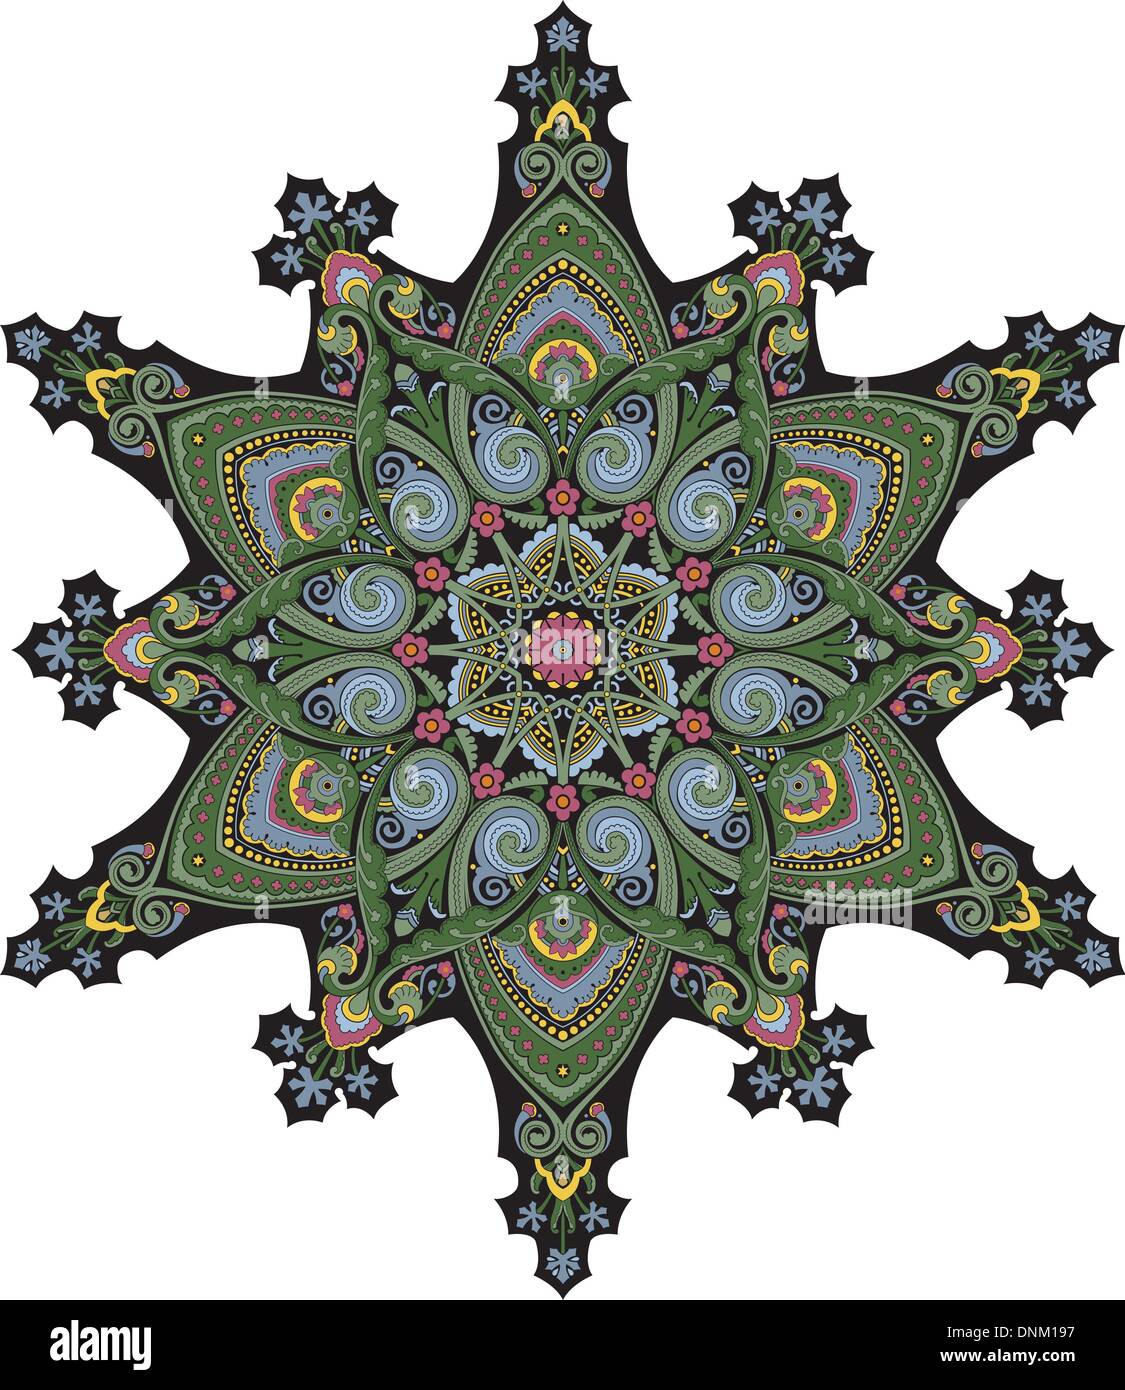 Arabischer Naher Osten Blumenmuster Motiv, basierend auf osmanischen ornament Stock Vektor